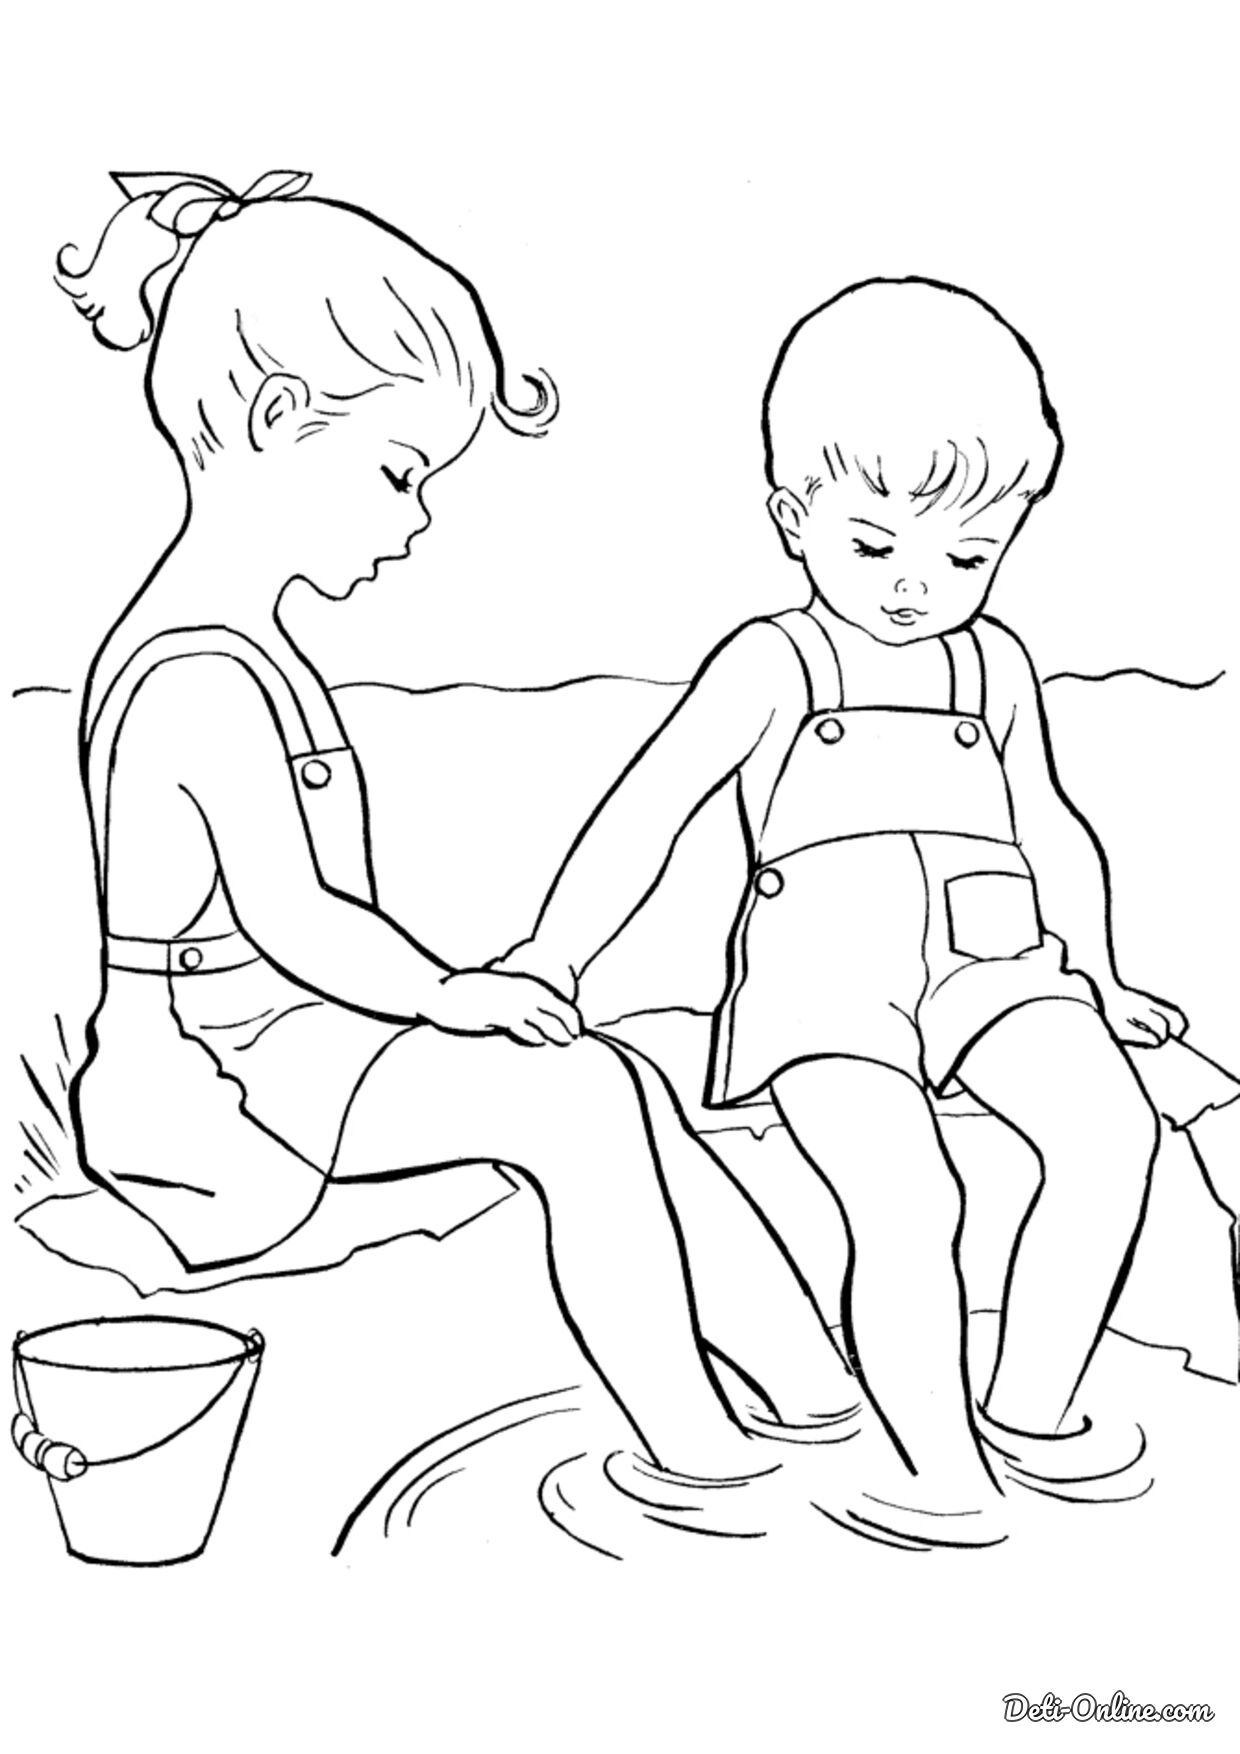 Раскраски для детей мальчиков Аниме маленькие мальчик и девочка